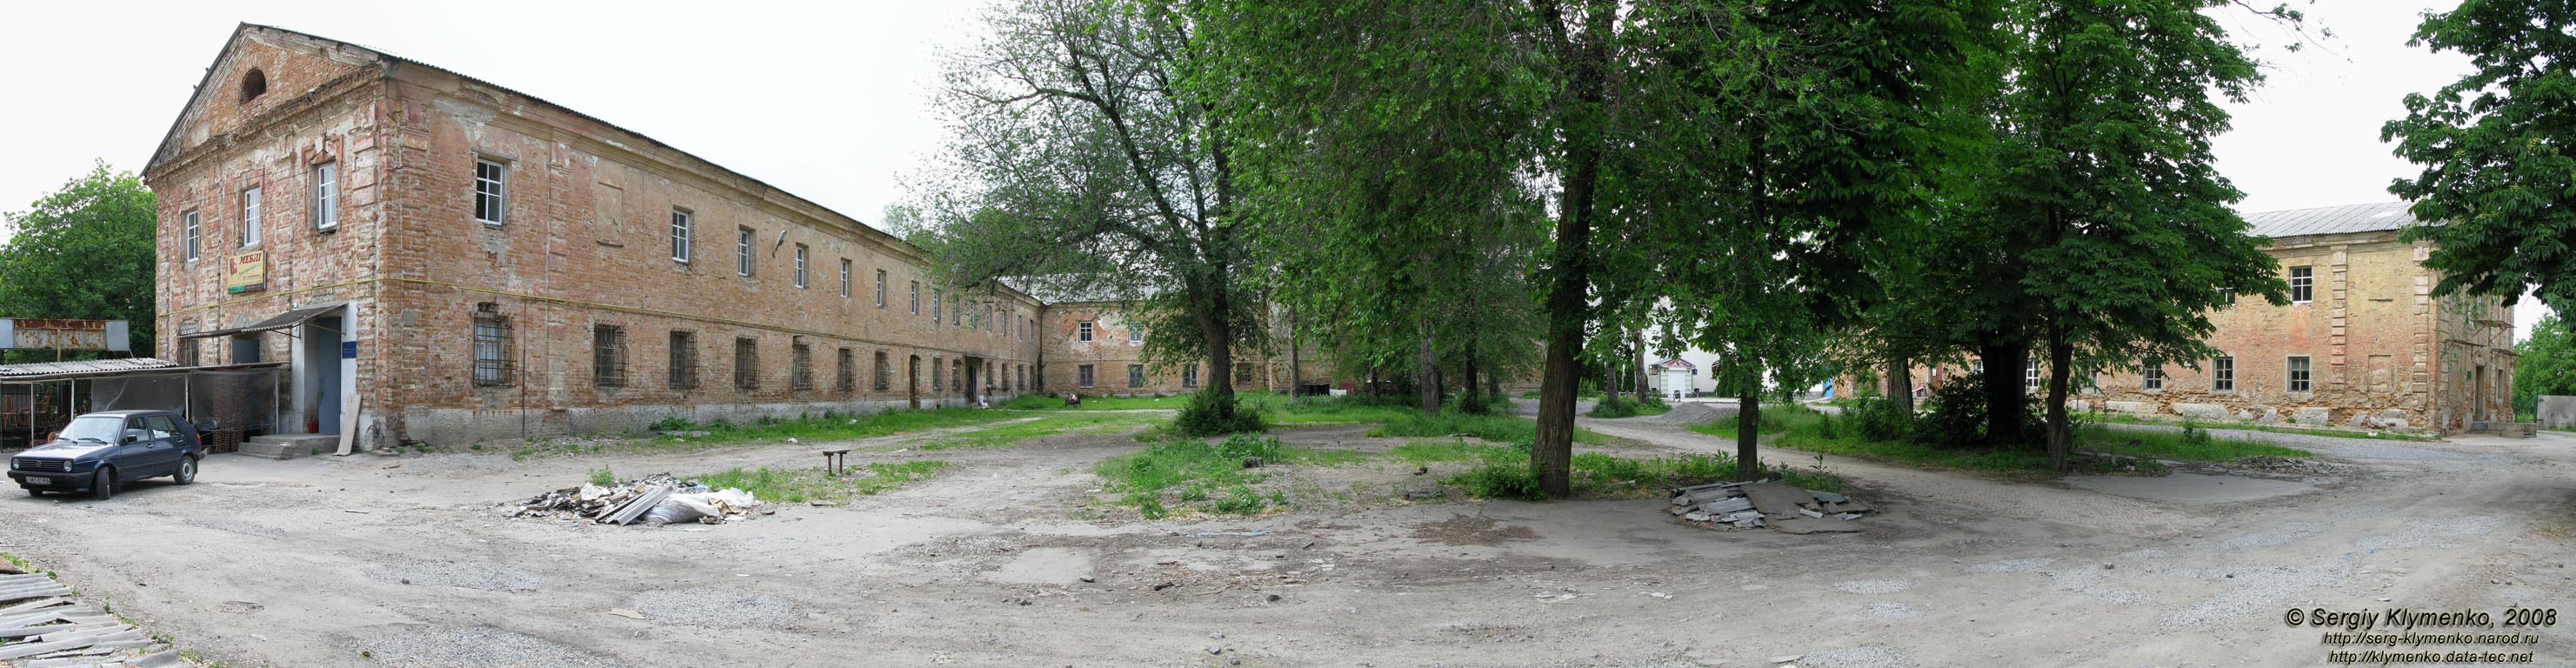 Умань. Фото. Бывший Базилианский (Василианский) монастырь, вид со двора.